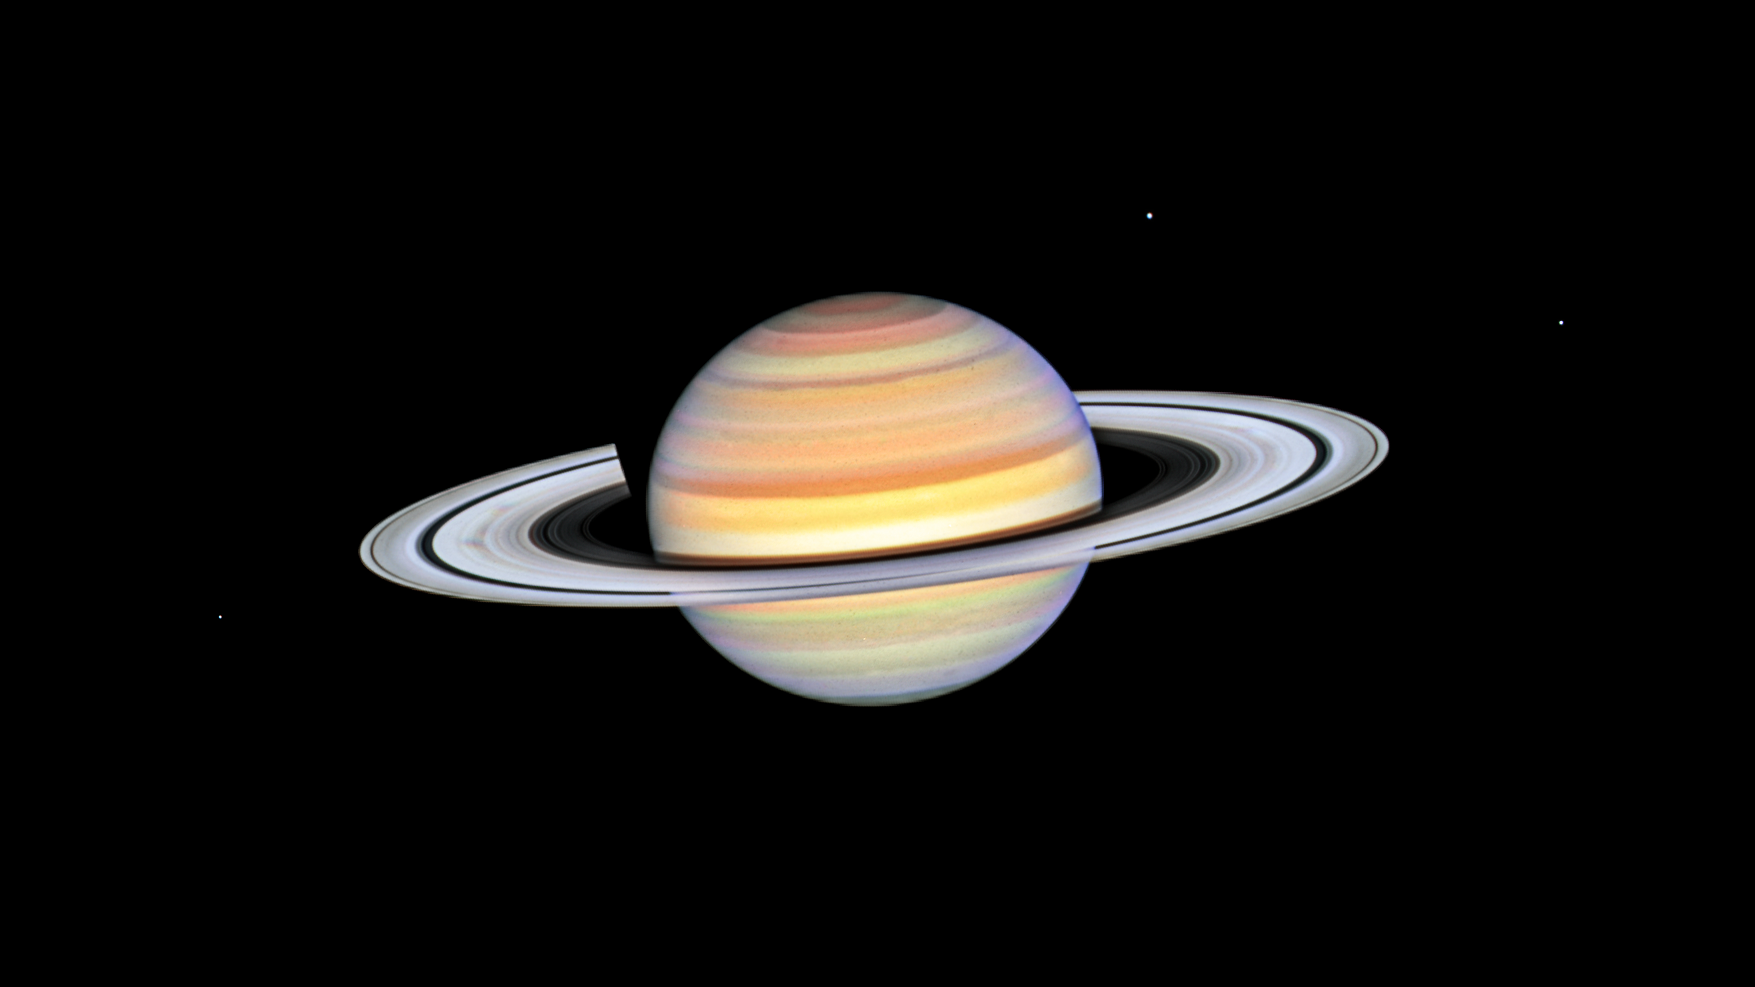 黄色、白色、红色或橙色、粉红色和绿色的彩色条纹覆盖着整个星球。土星略微向我们倾斜，让太阳照亮其光环的顶部。行星的阴影投射到行星的背面和左侧。土星的卫星狄俄涅（Dione）和土卫二（Enceladus）在其右上方可见，而土卫二的卫星土卫二就在土星光环的左下方。